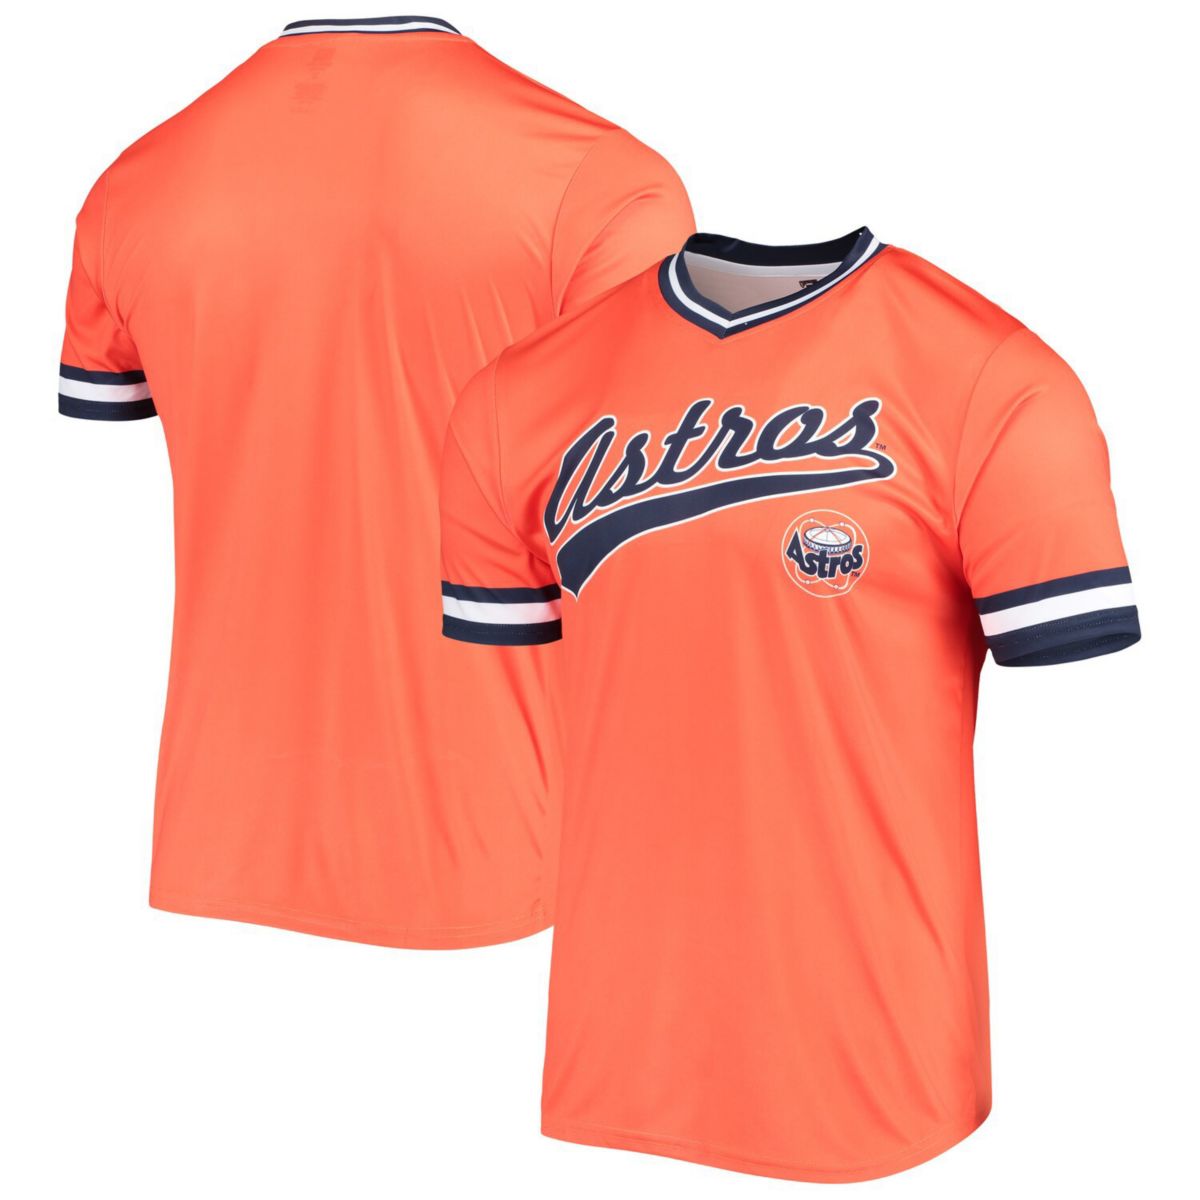 Мужской трикотаж оранжевого/темно-синего цвета Houston Astros Cooperstown Collection с v-образным вырезом Team Color Stitches